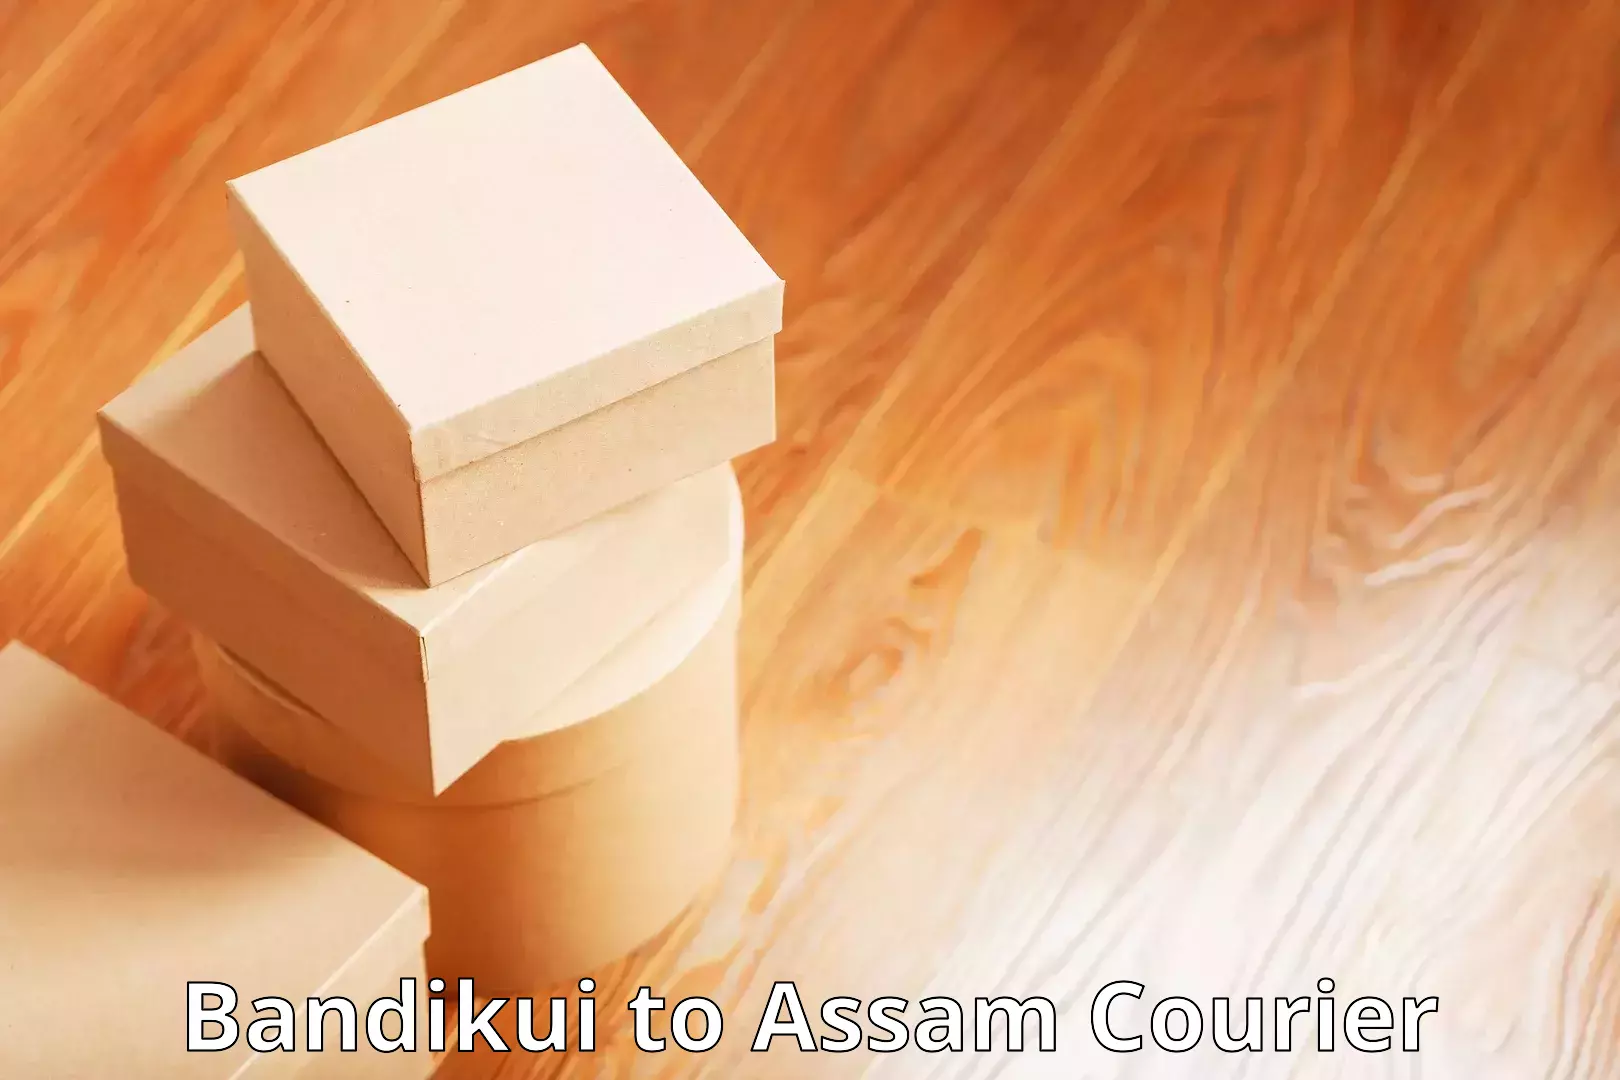 Full-service courier options Bandikui to Amoni